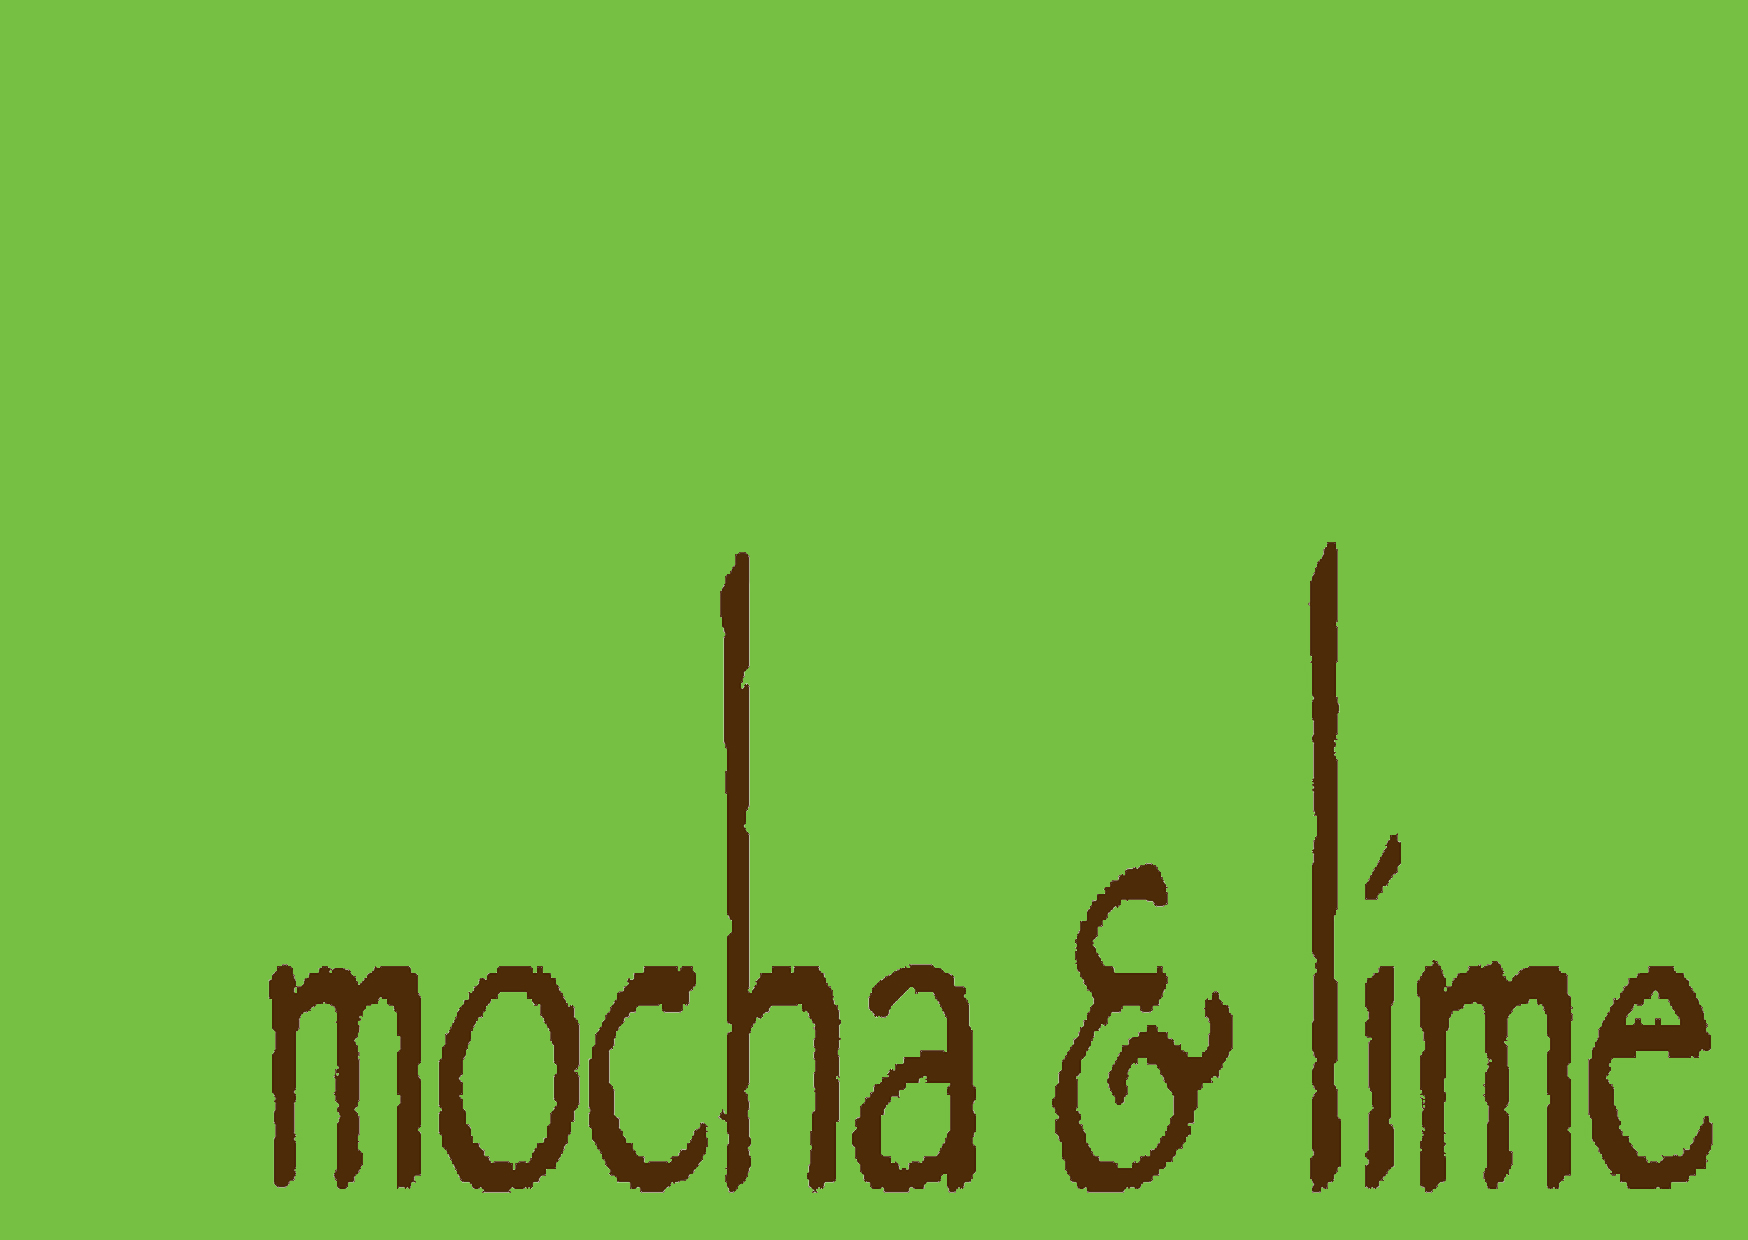 Mocha & Lime